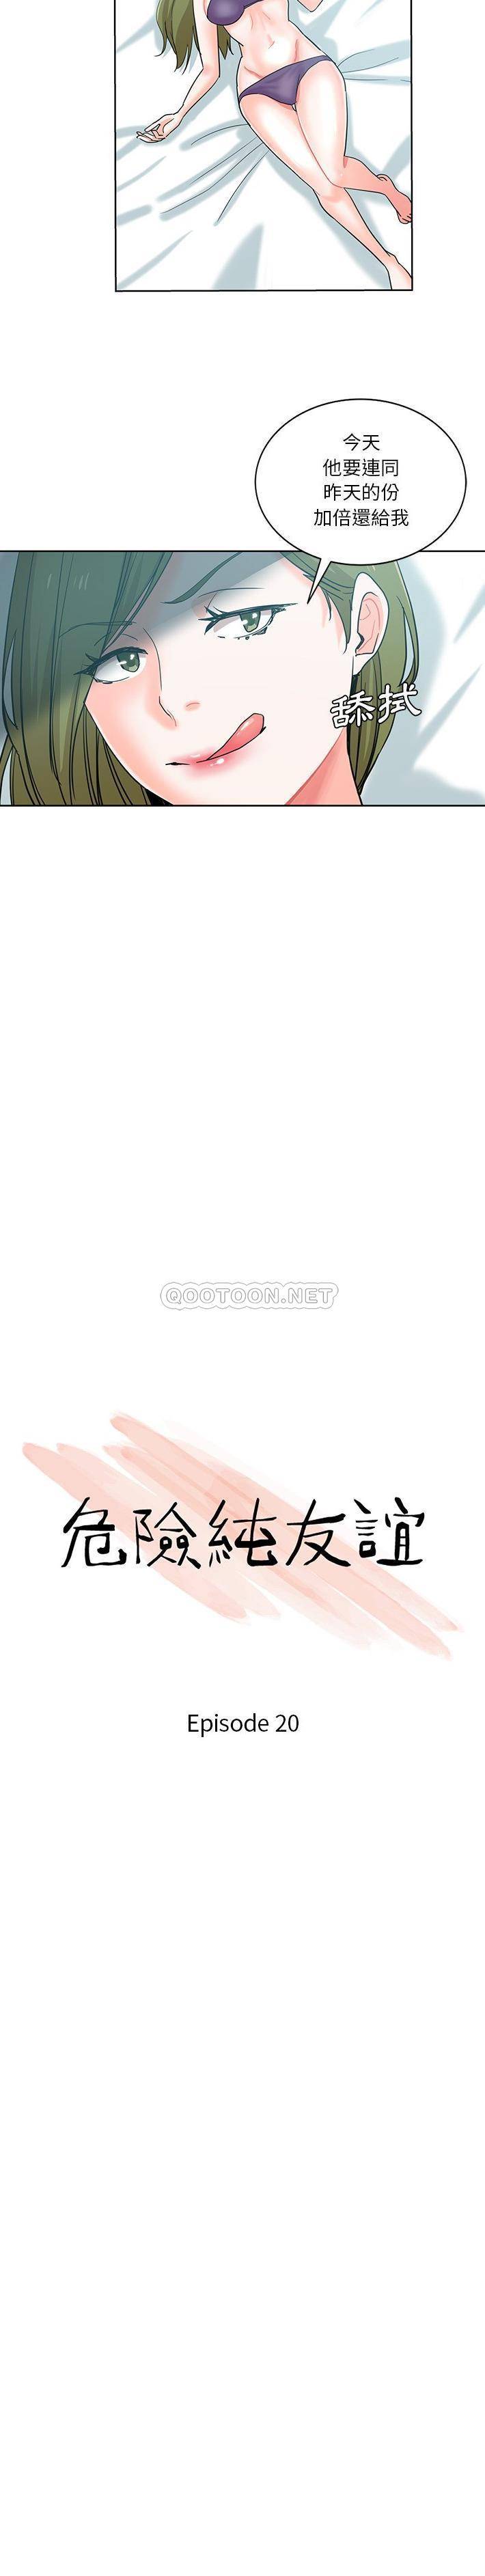 危险纯友谊  第20话 漫画图片2.jpg